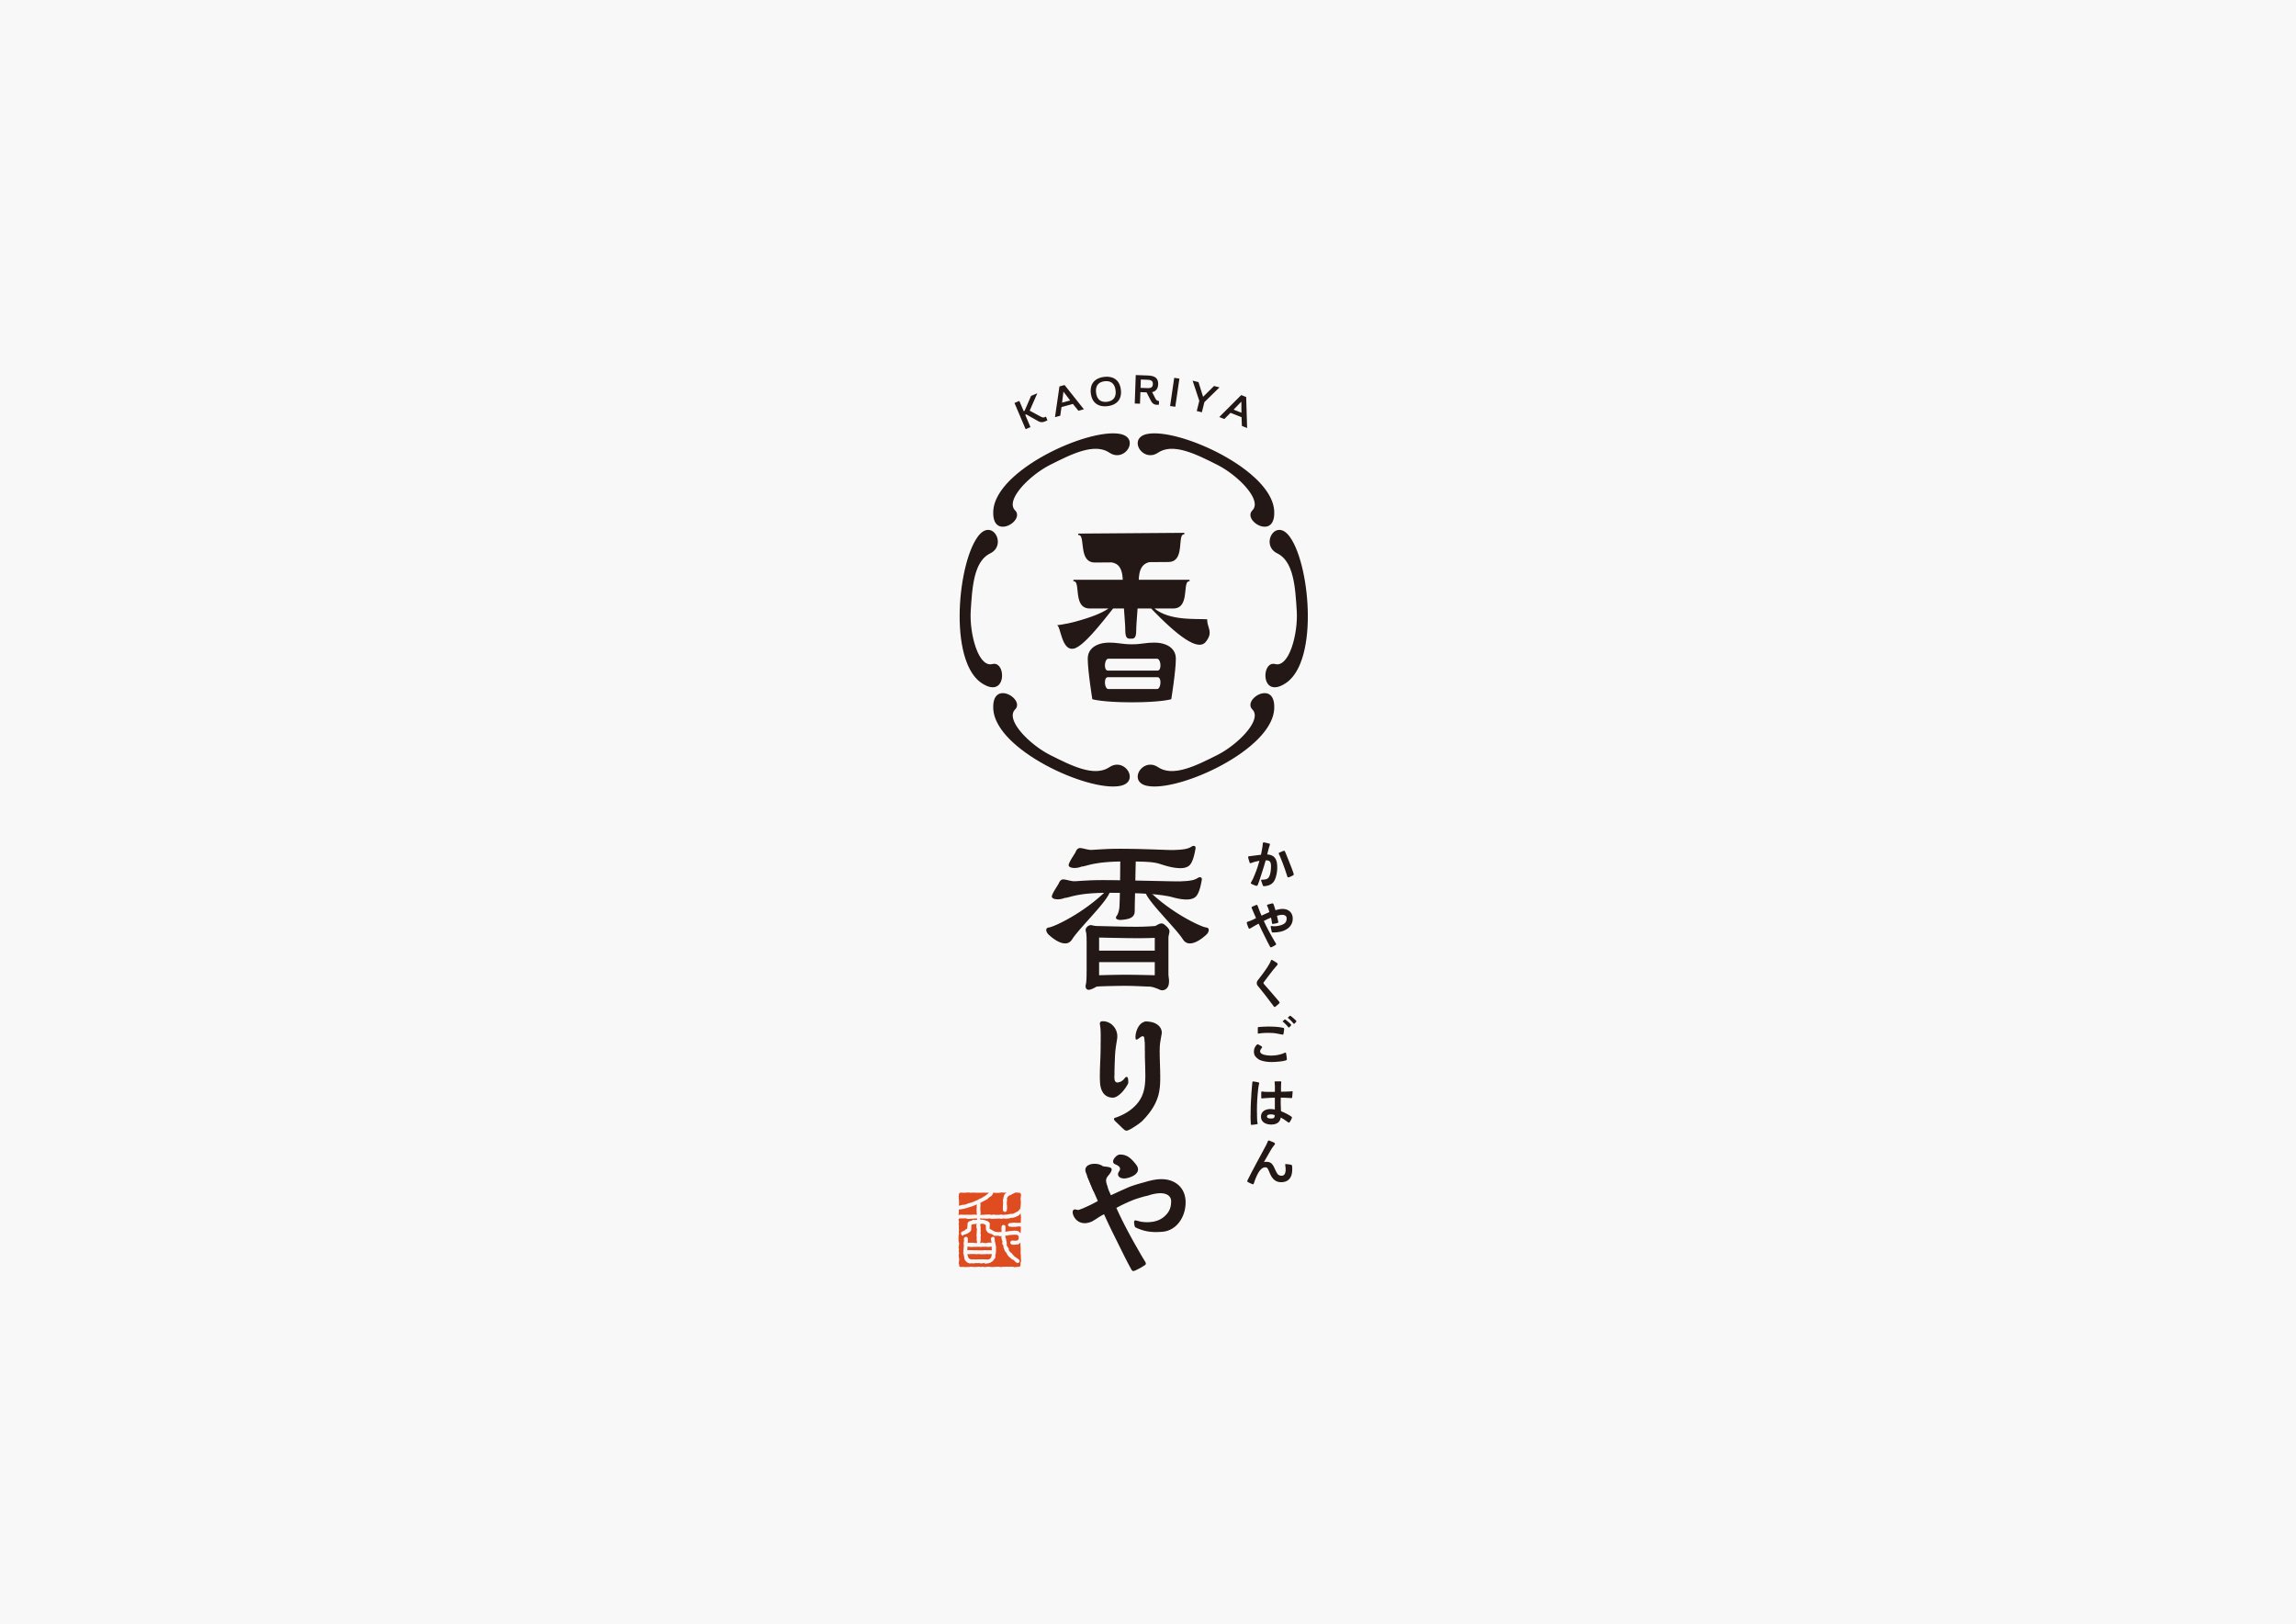 kaoriya_logo_1.jpg